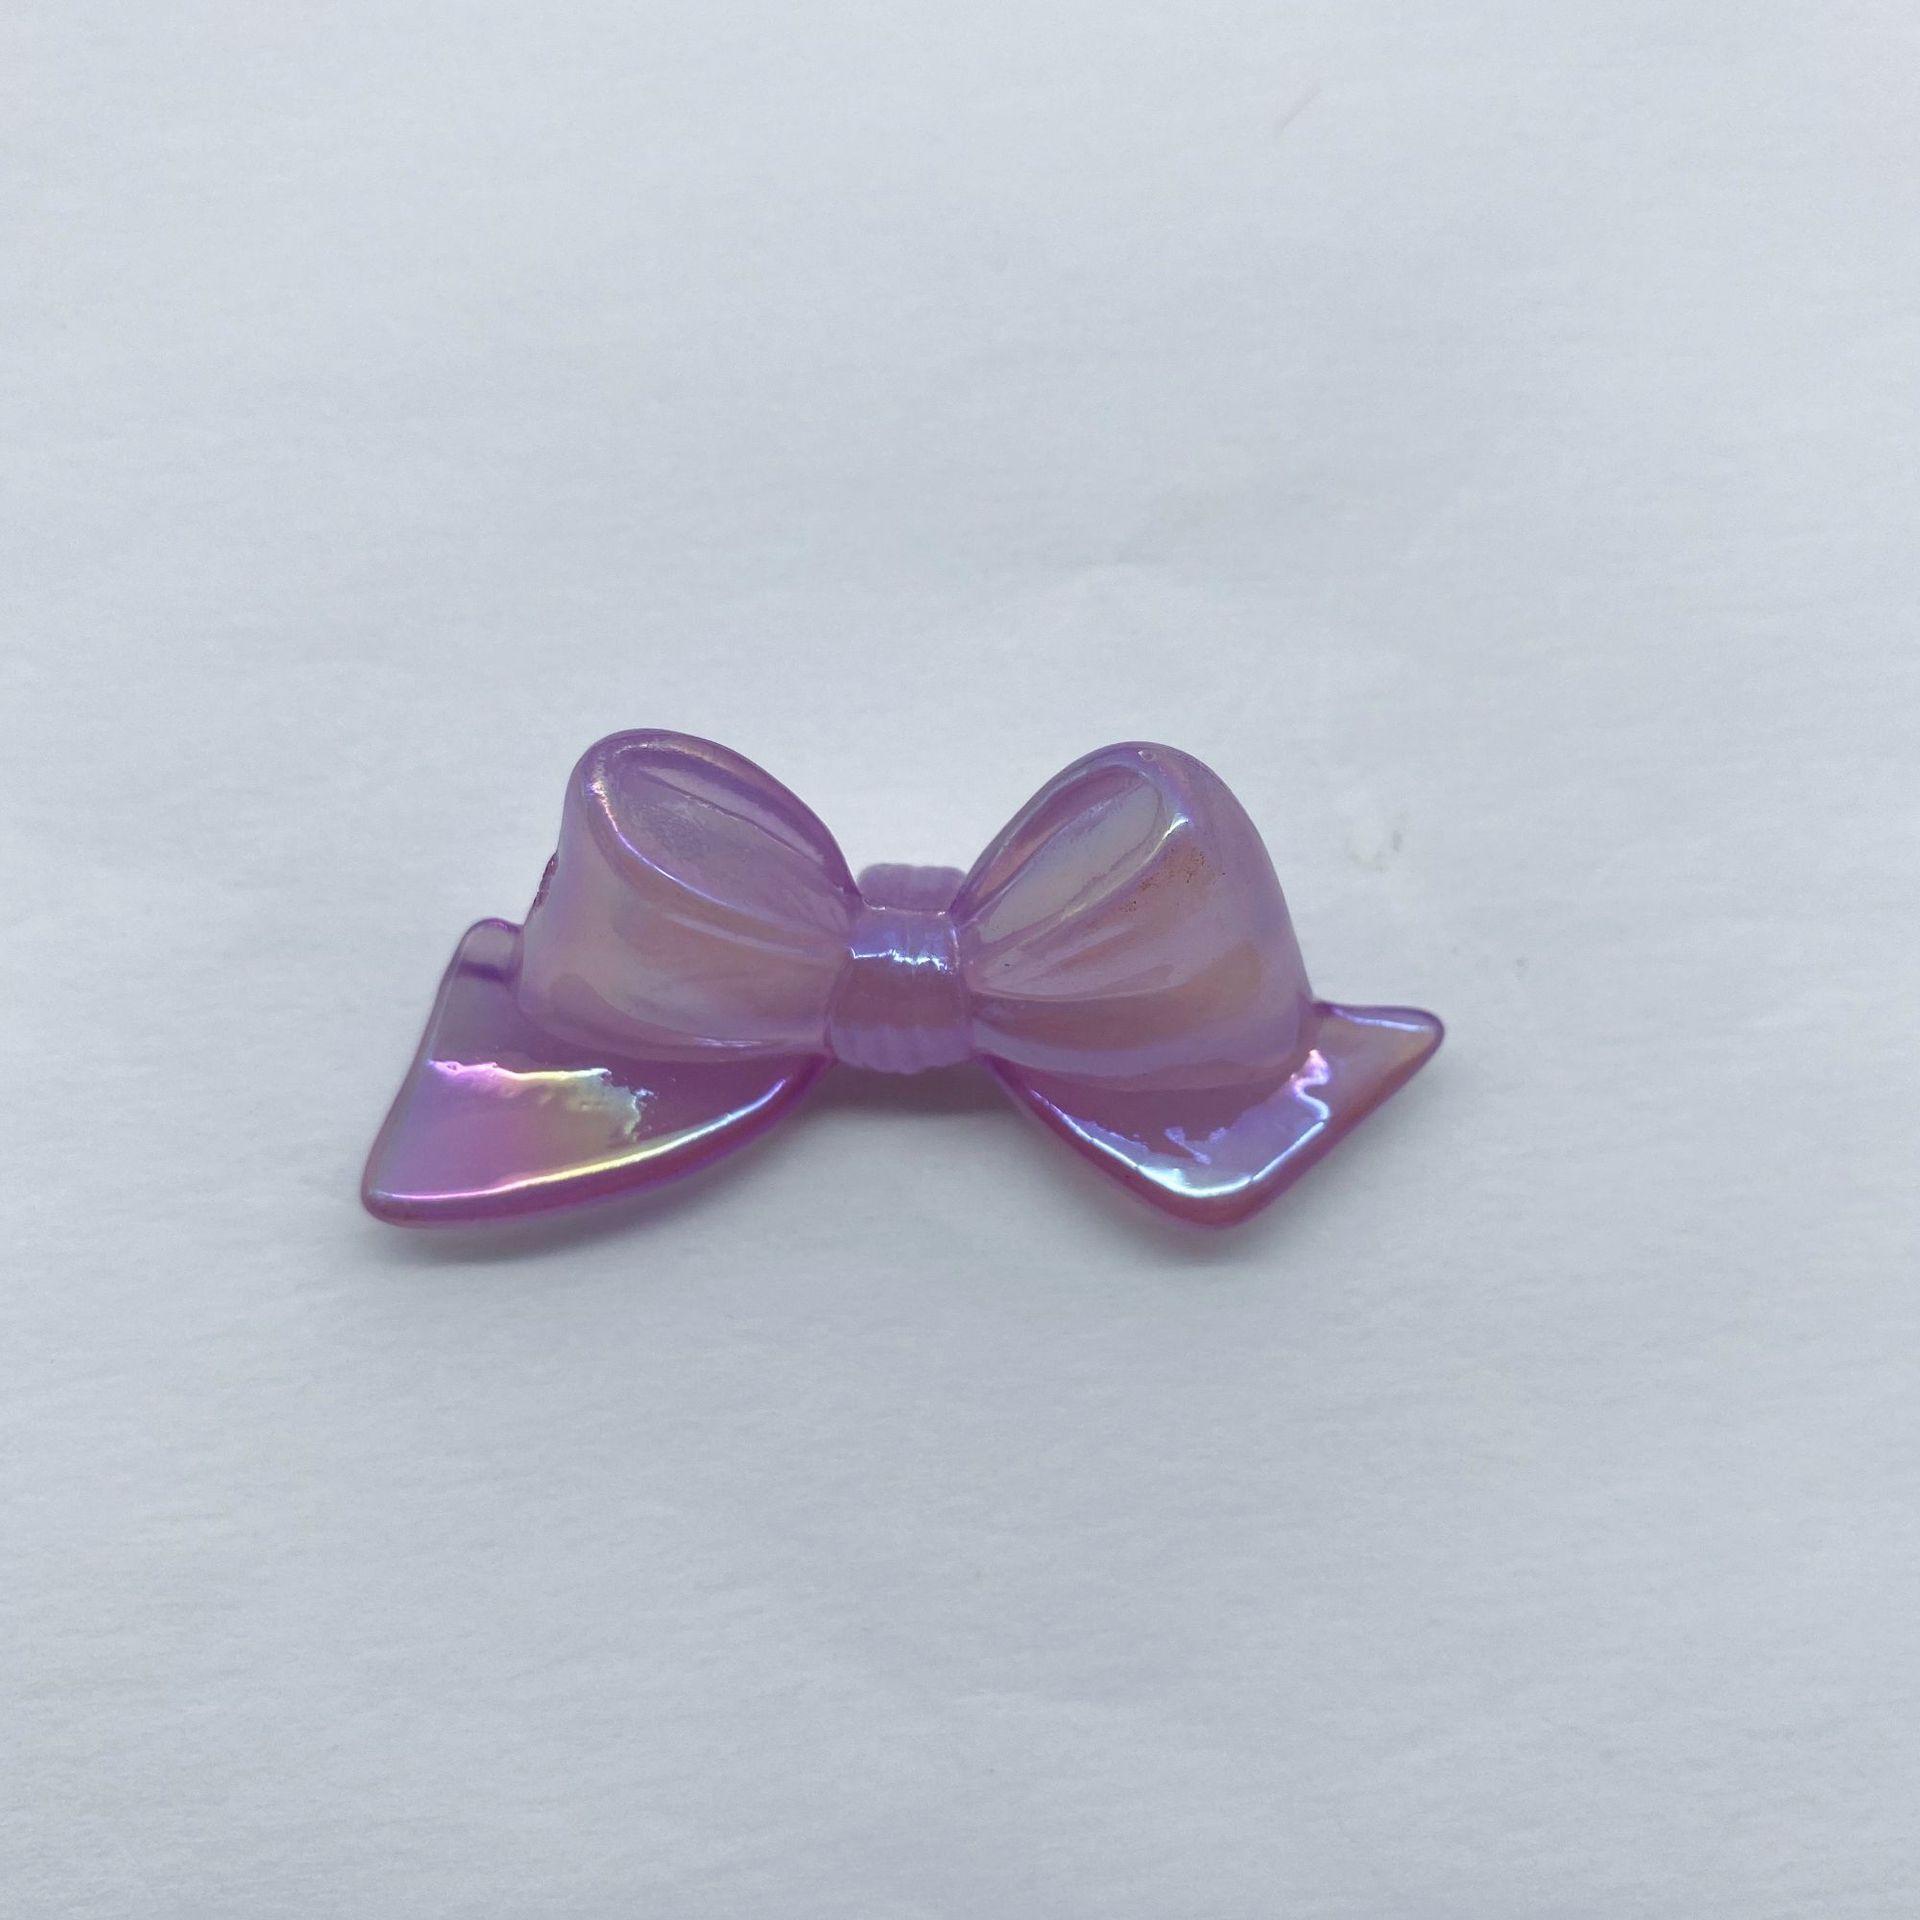 5:violet